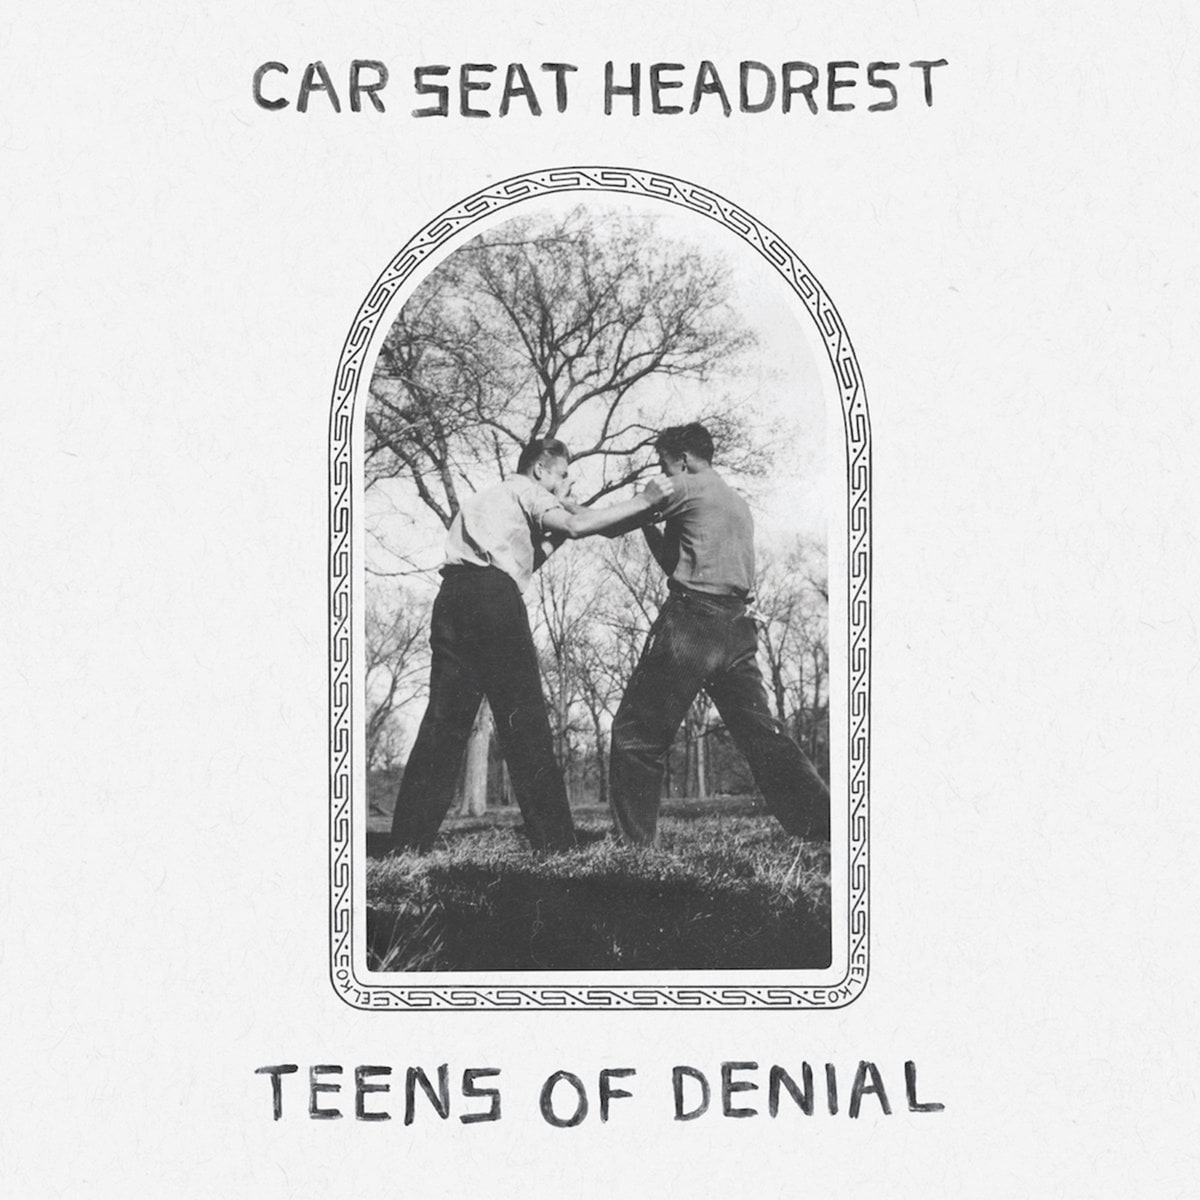 rs-car-seat-headrest-teens-of-denial-5c3904b2-886c-4a94-935c-d8bc81245963